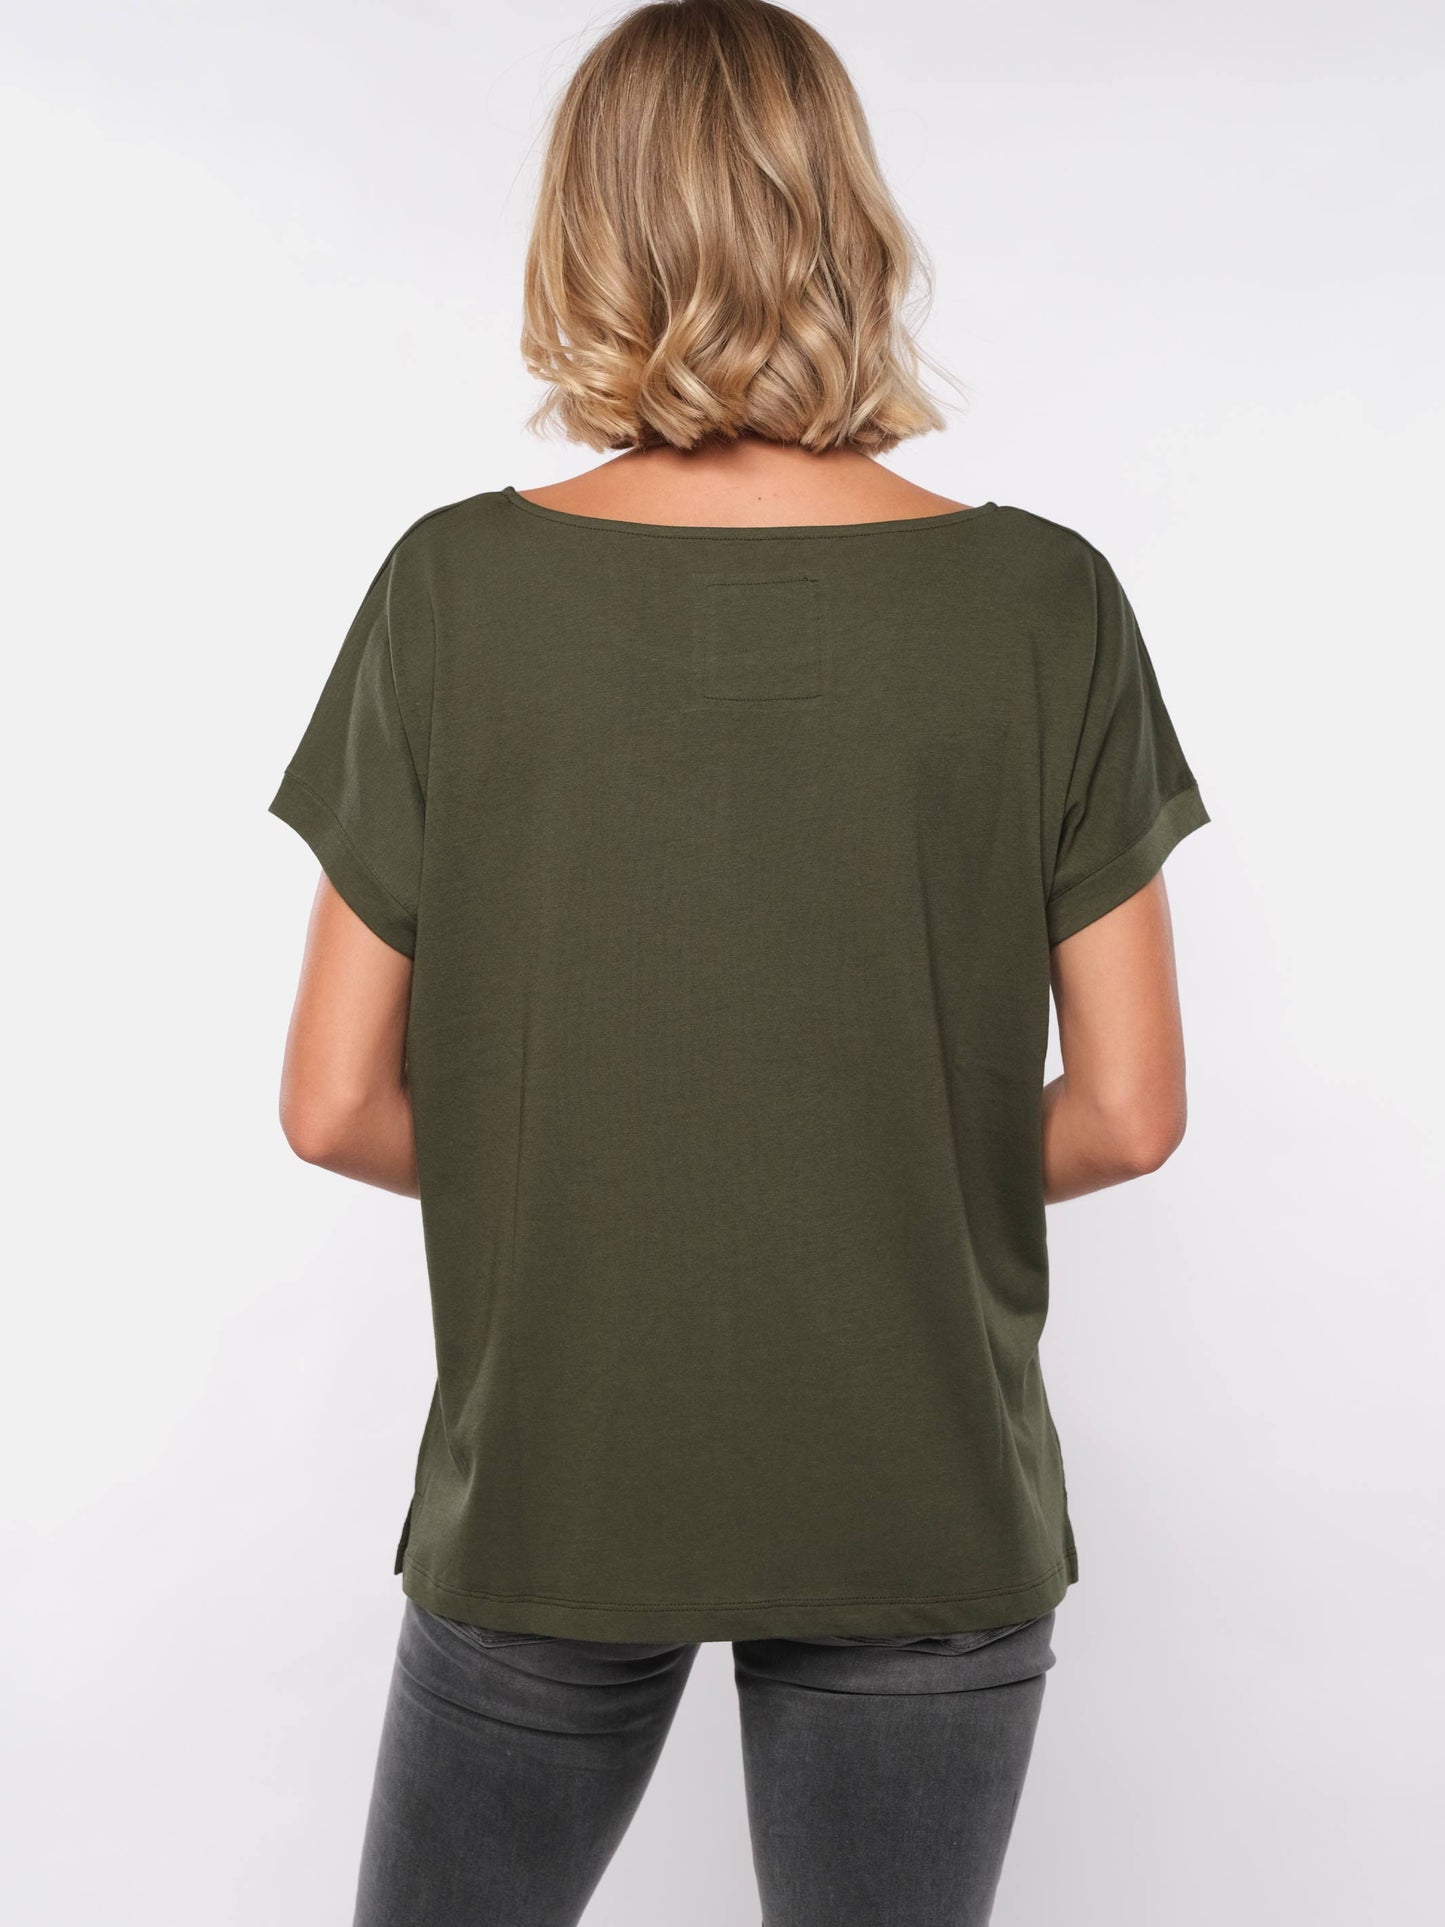 Damen T-Shirt FINDE DICH SELBST (grün)